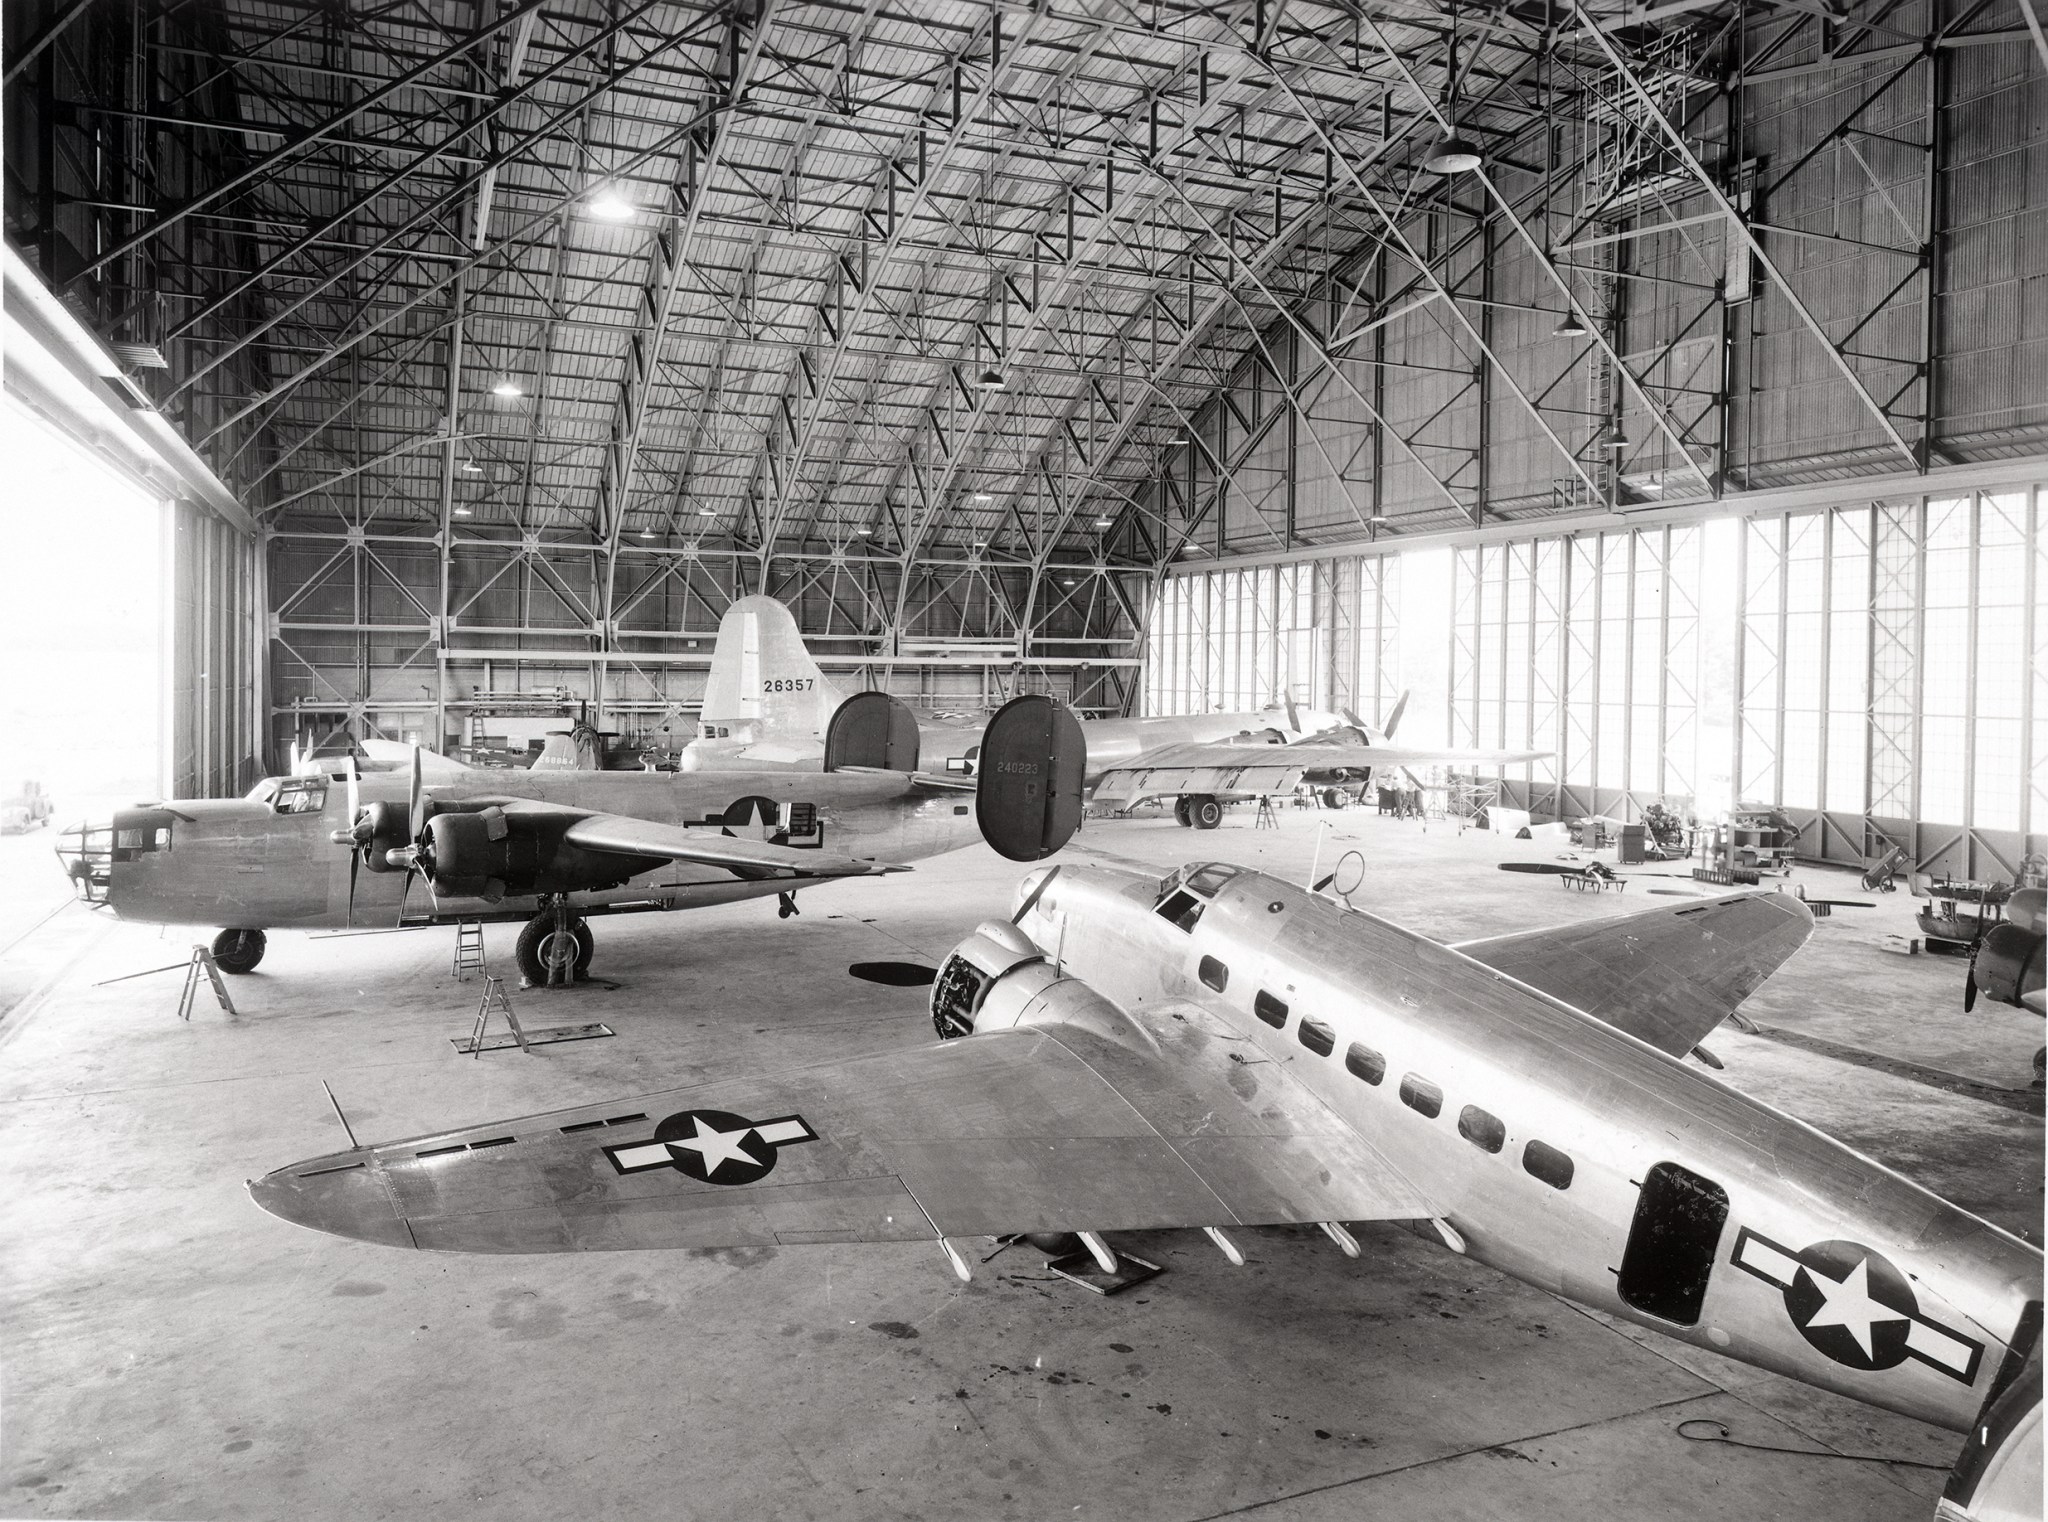 Several World War II-era aircraft inside the hangar in 1944